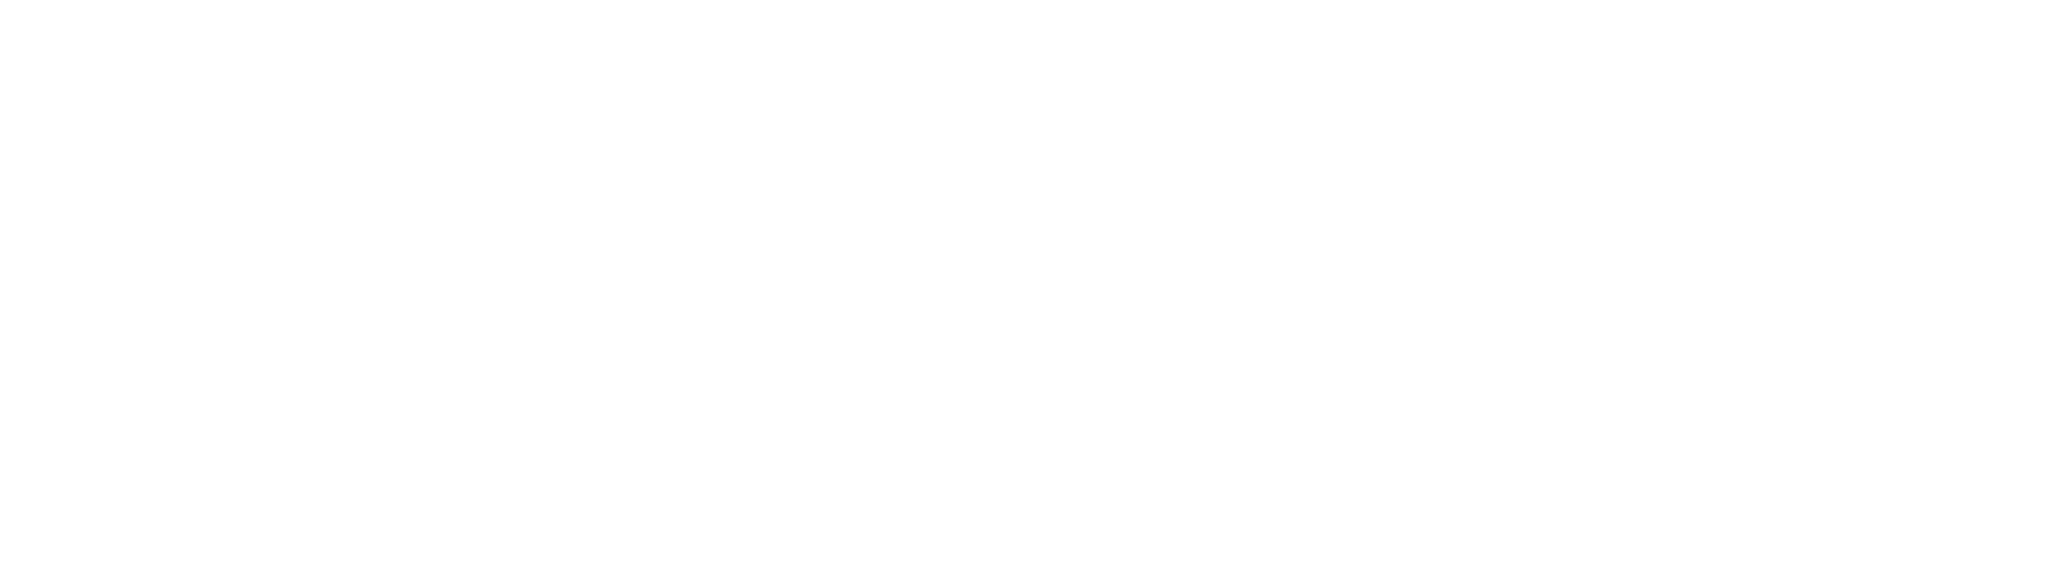 ES-Financiado-por-la-Union-Europea